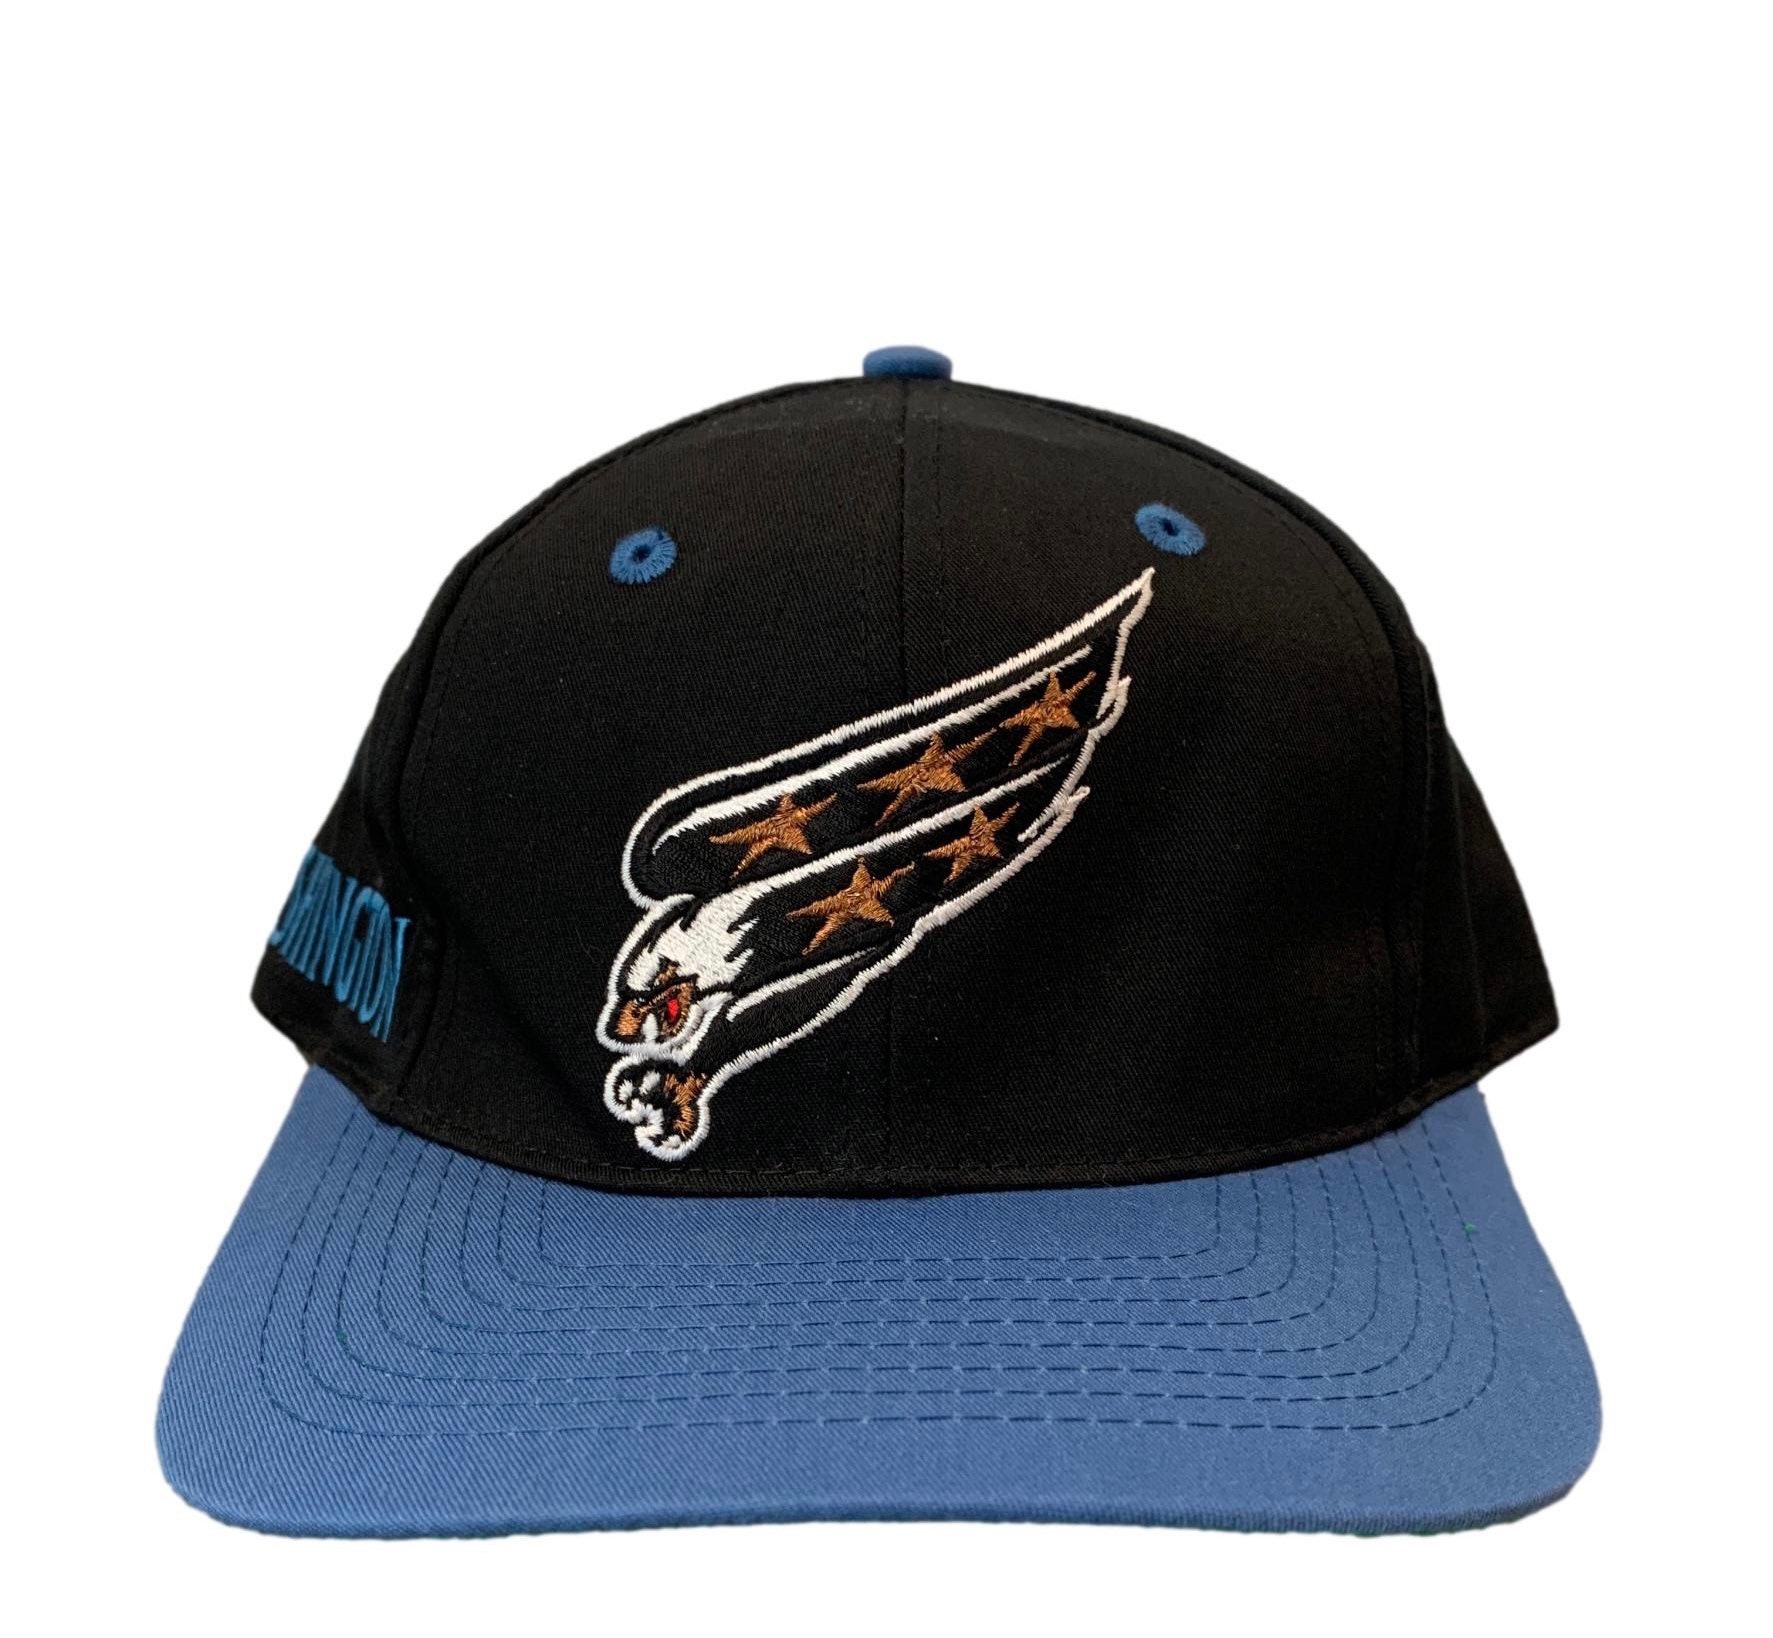 NHL Washington Capitals Vintage Unstructured Adjustable Hat